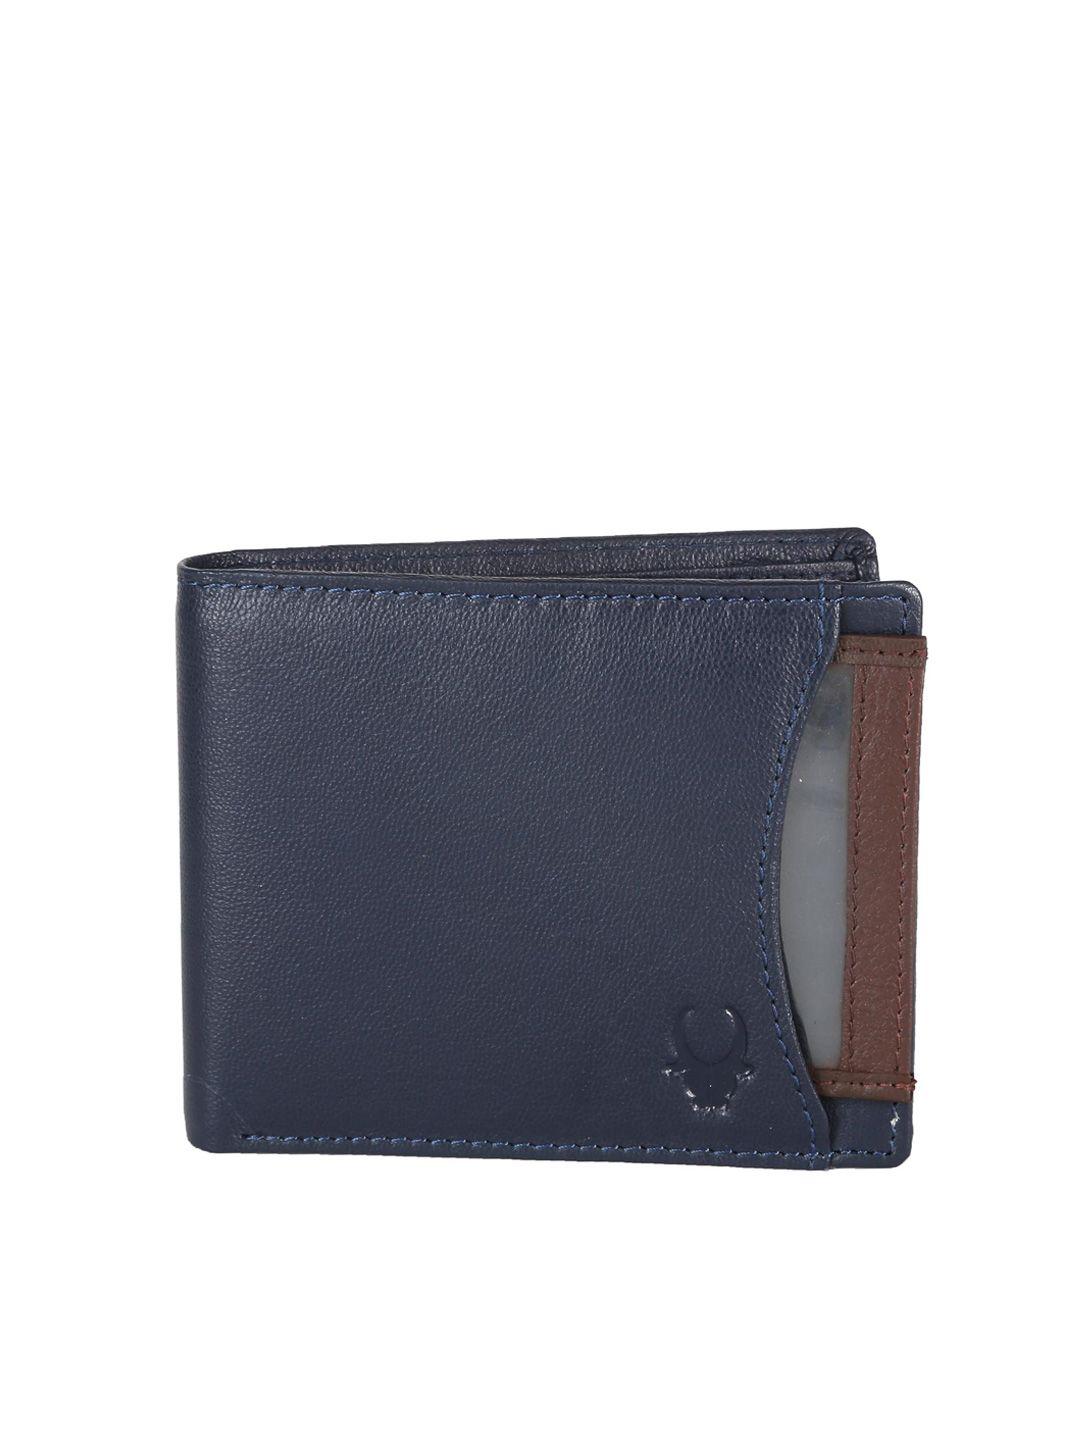 wildhorn men navy genuine leather wallet